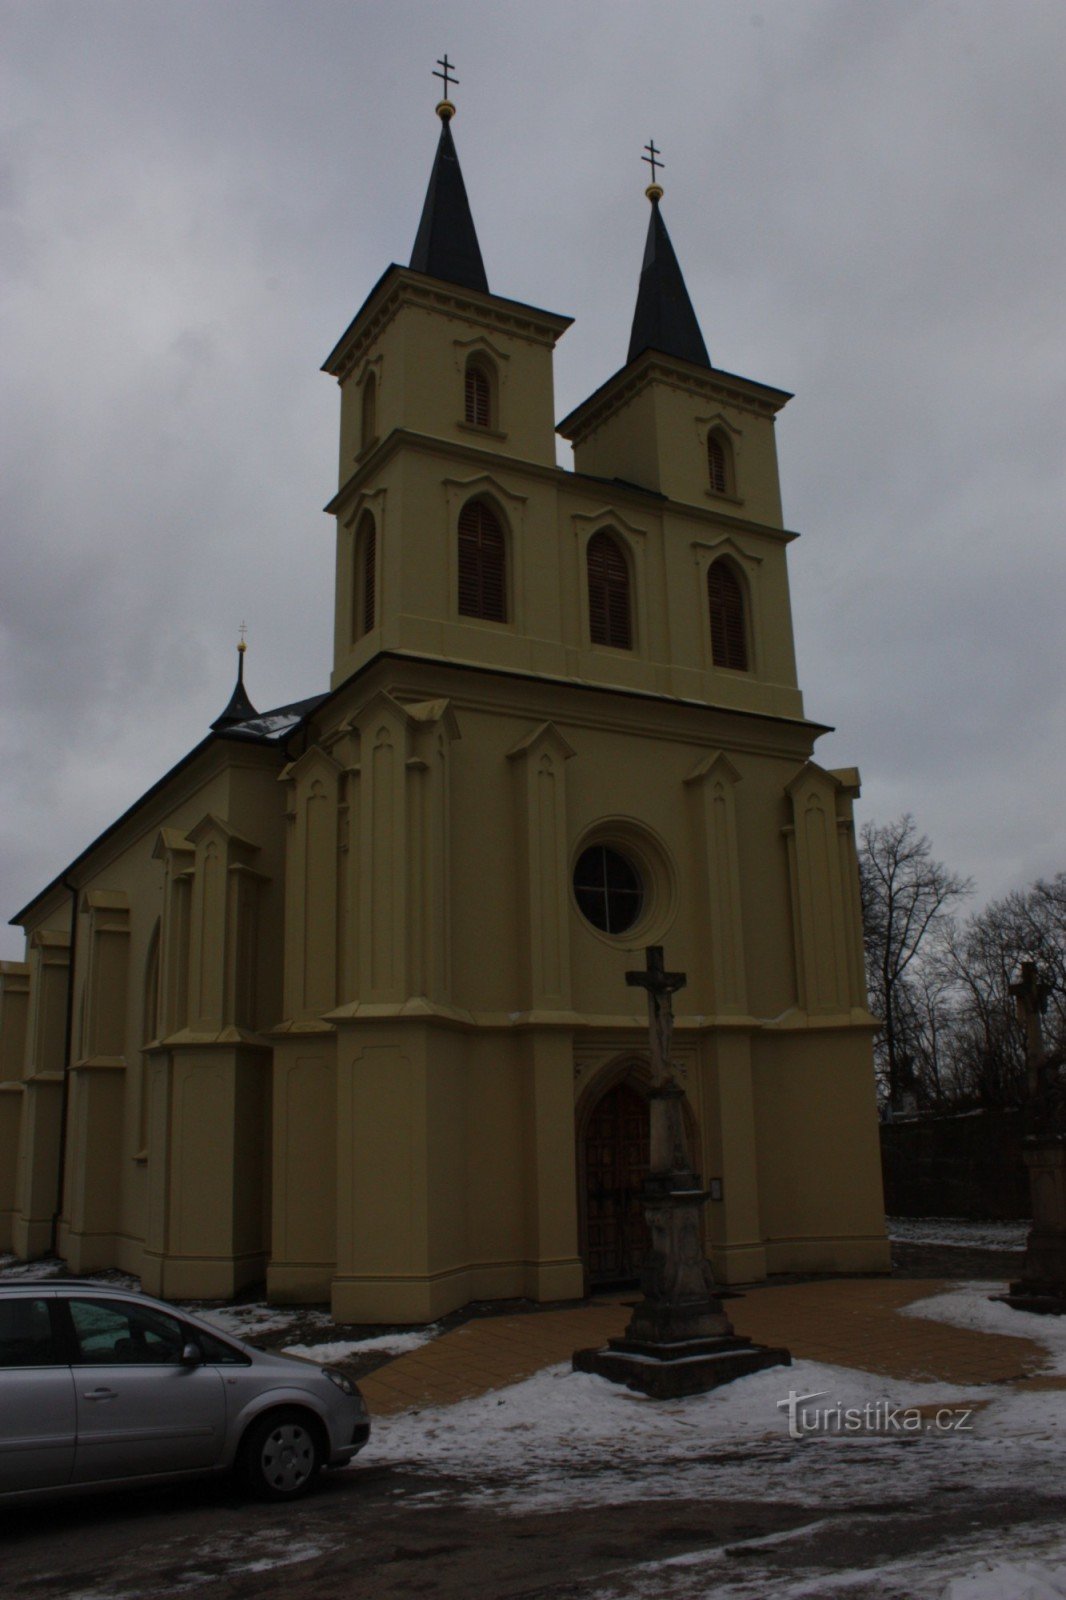 Crkva Otaslavice